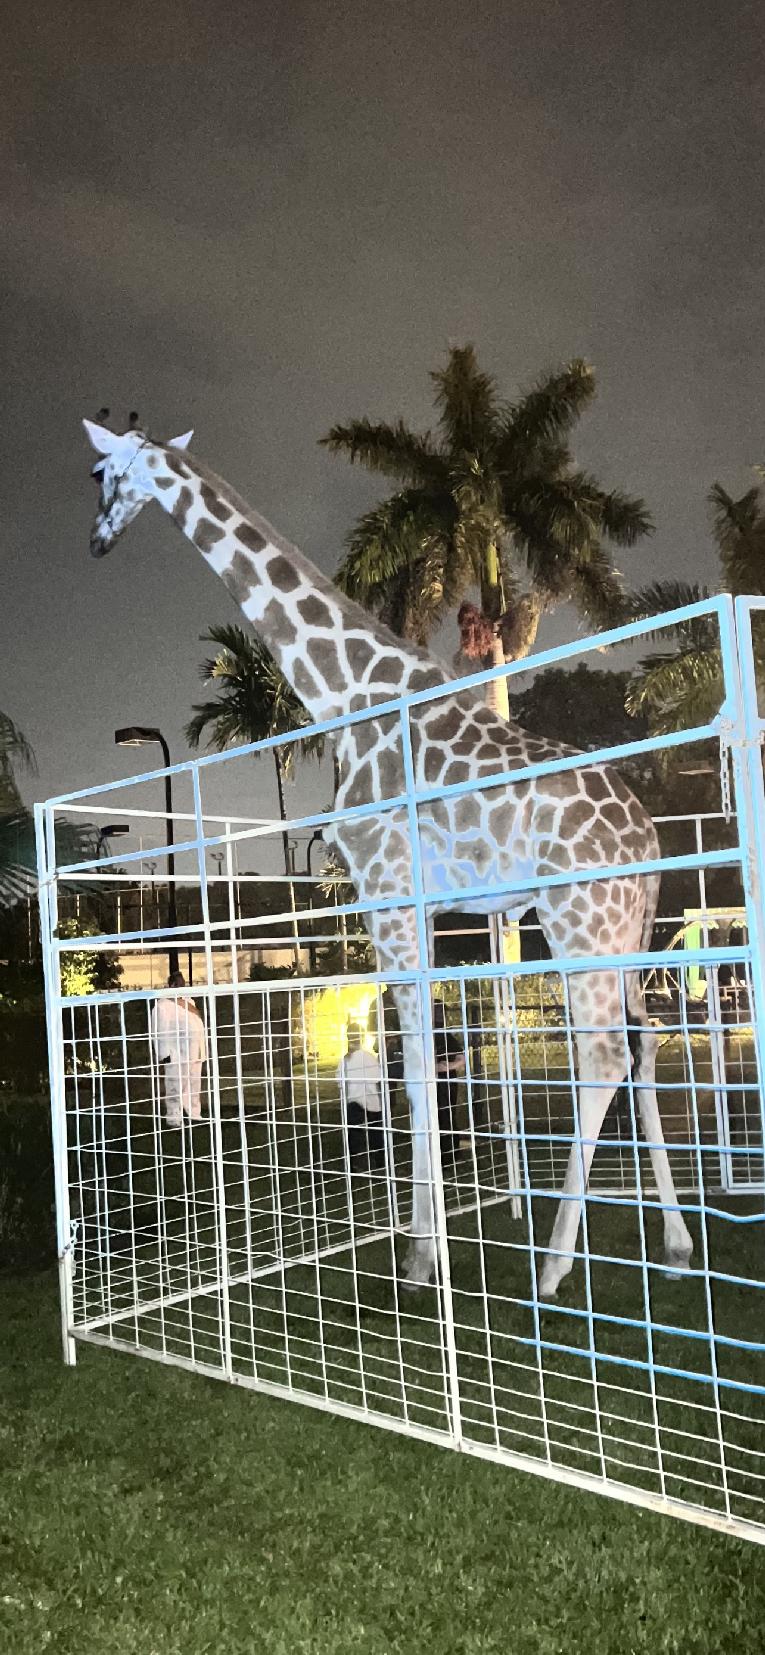 Giraffe at RB3